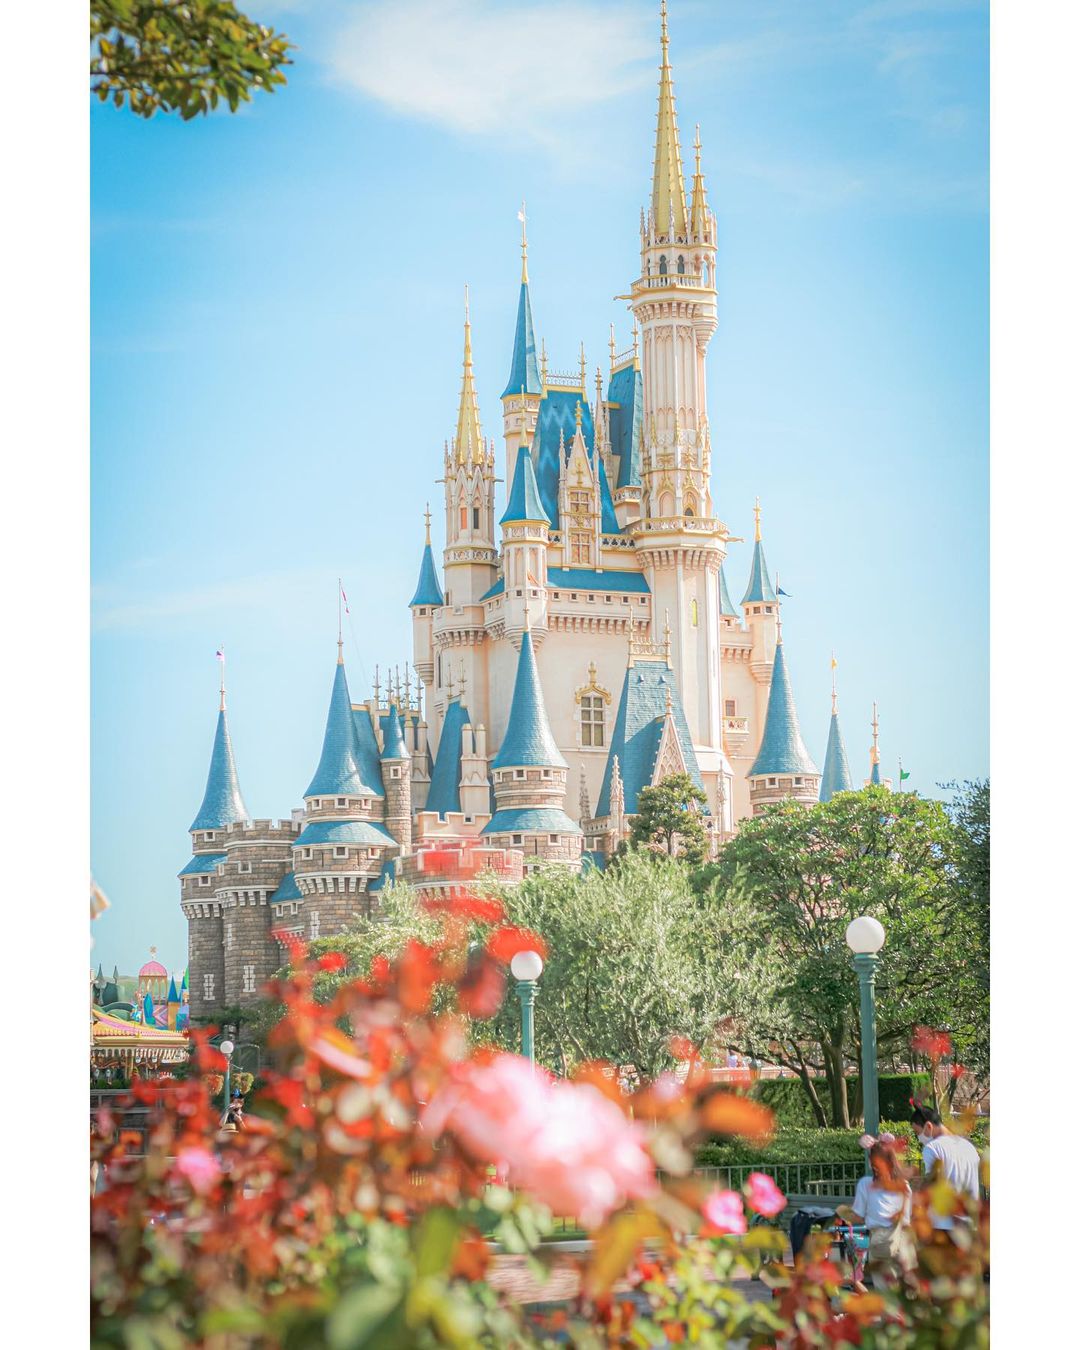 Castillo de Tokio Disneylandia